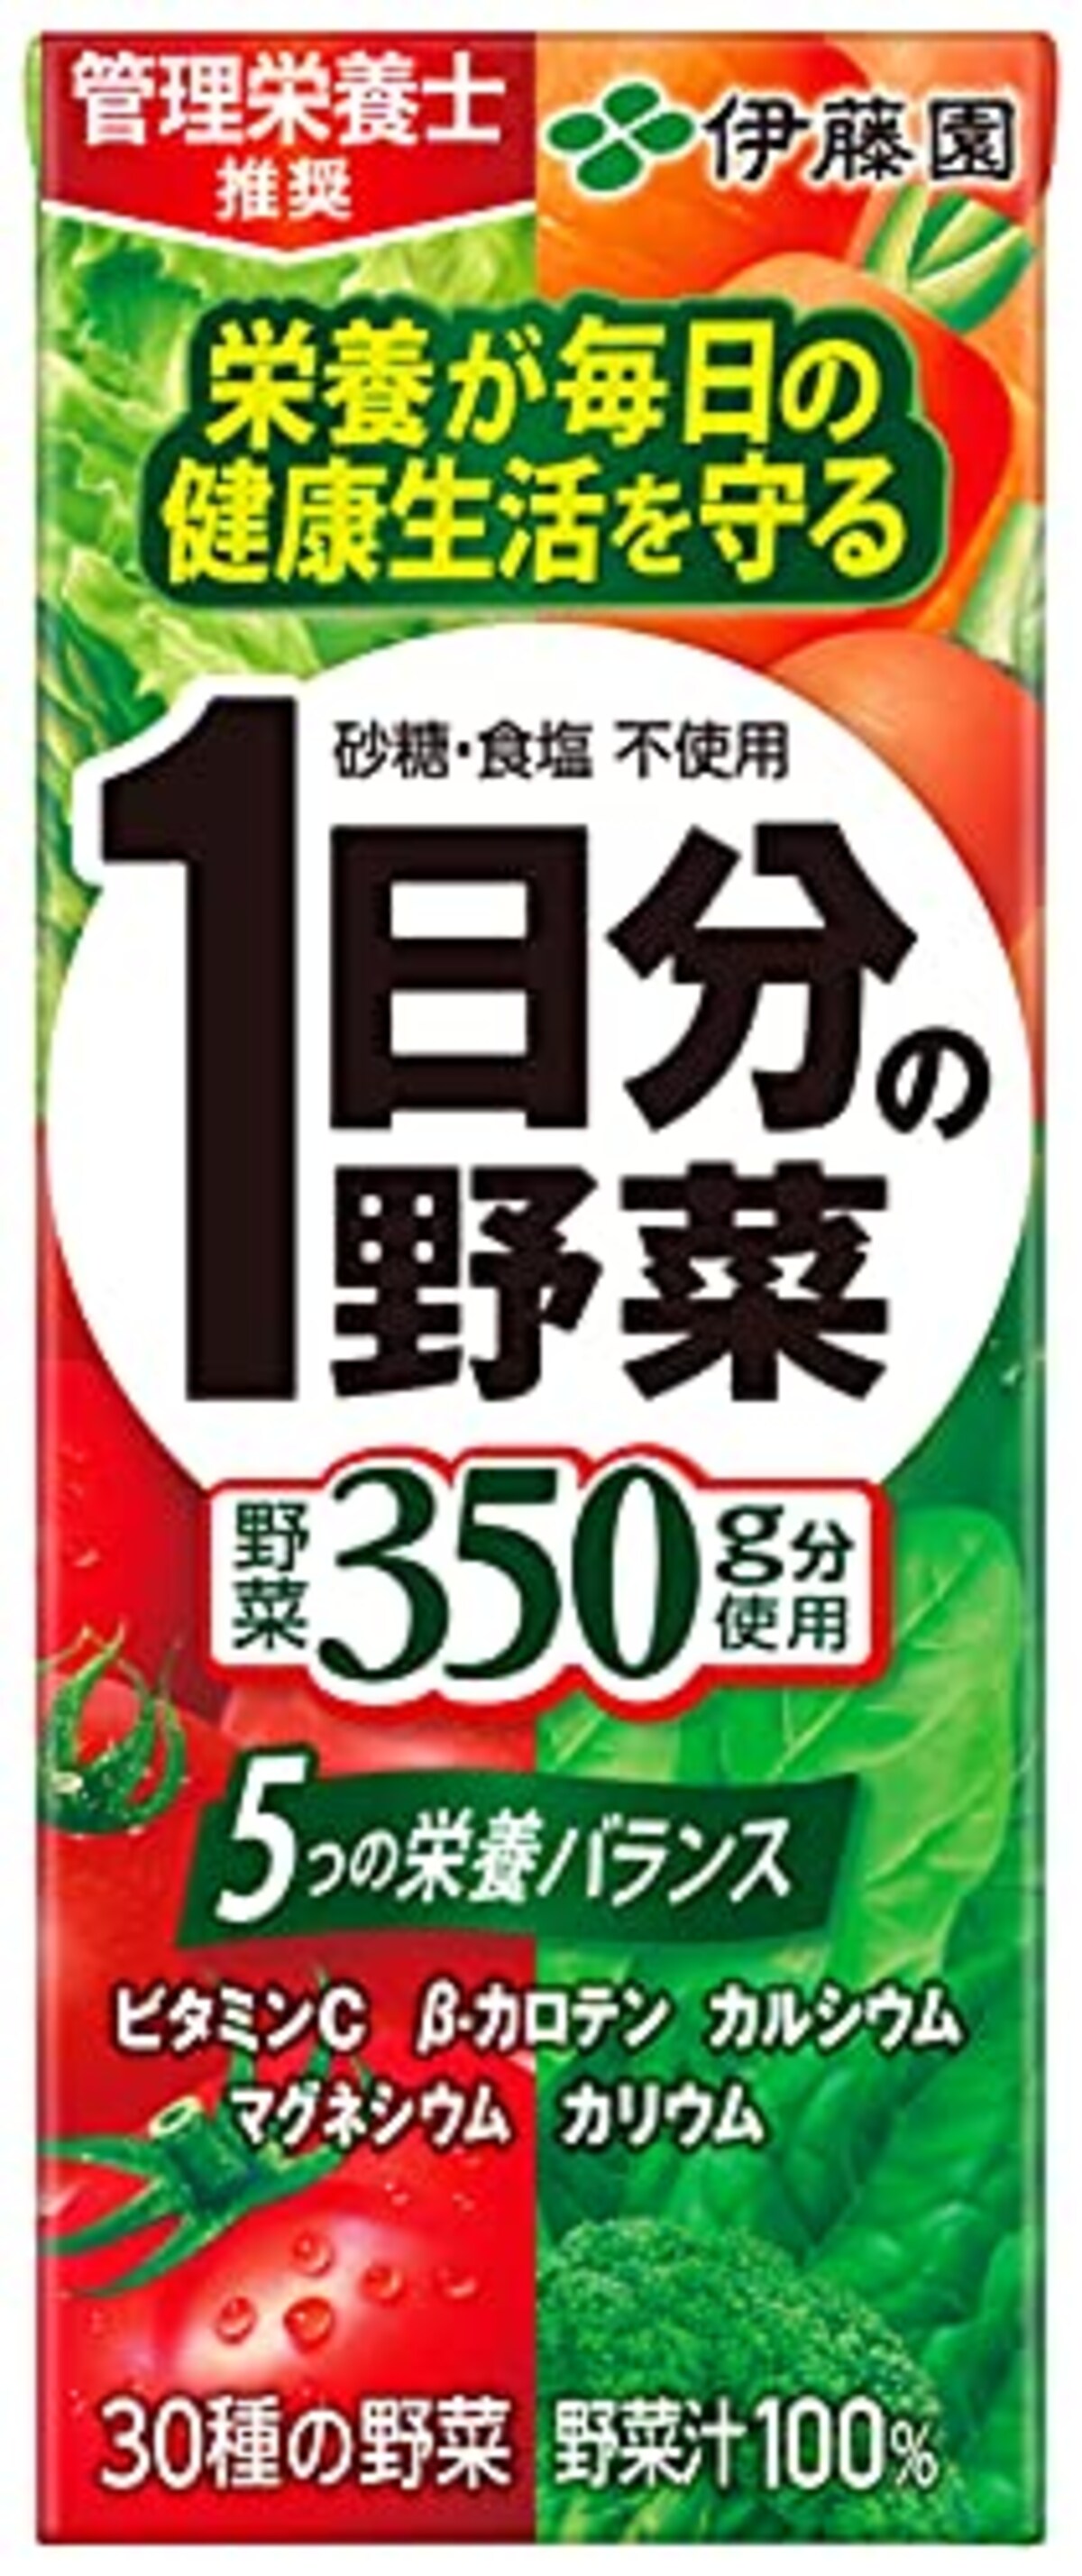 1日分の野菜 (紙パック) 200ml×24本